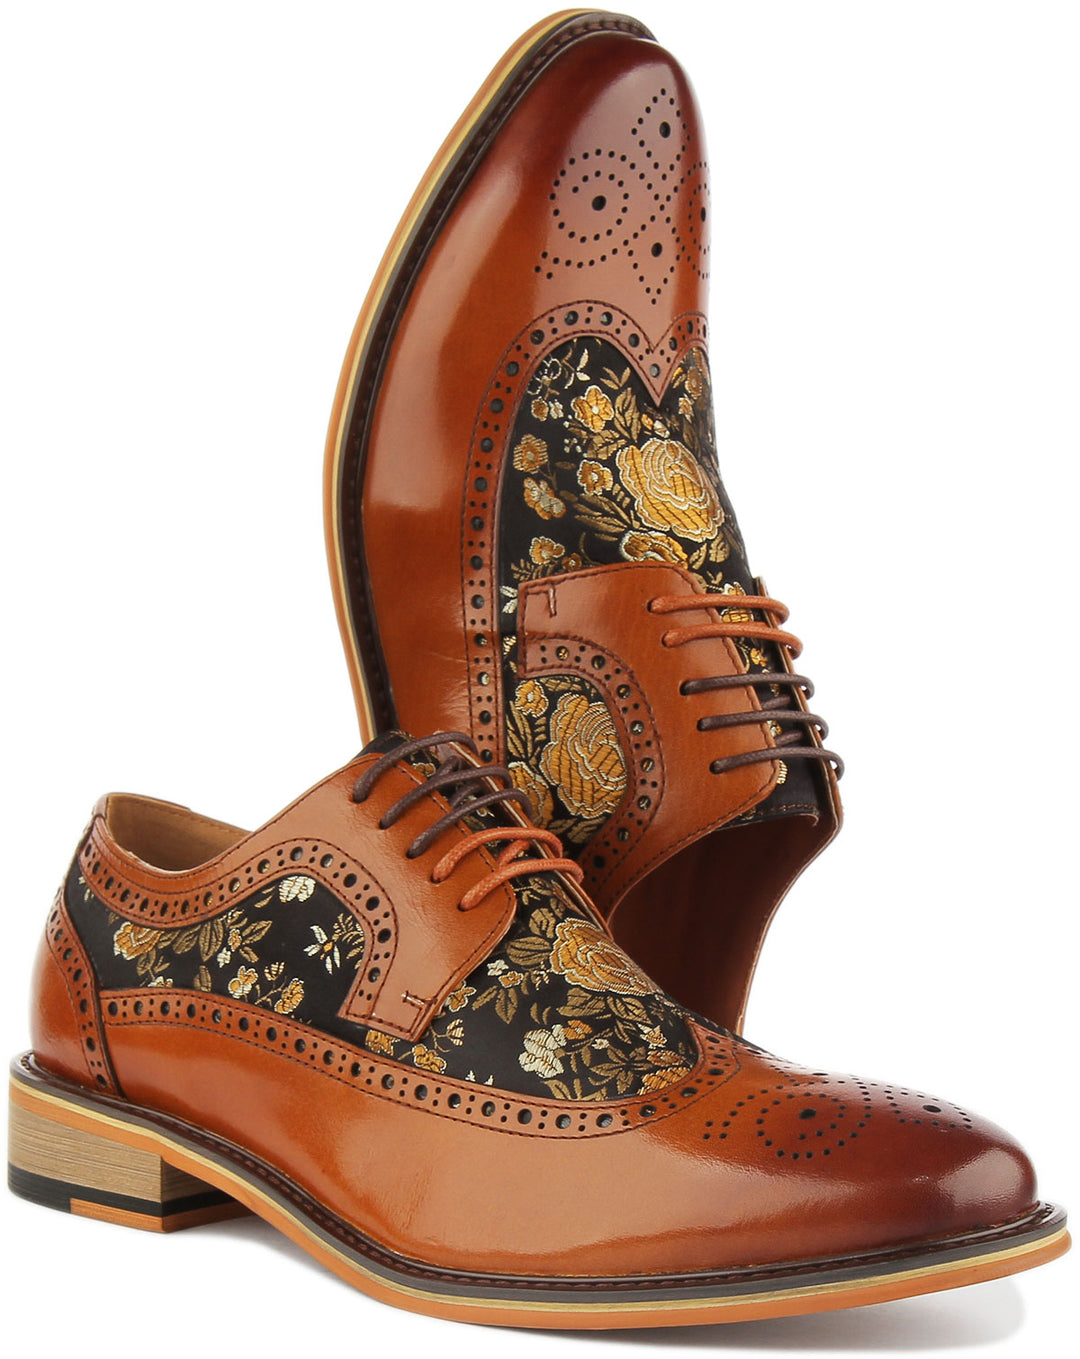 JUSTINREESS Ross Chaussures brogue à lacets en cuir à fleurs pour hommes en marron